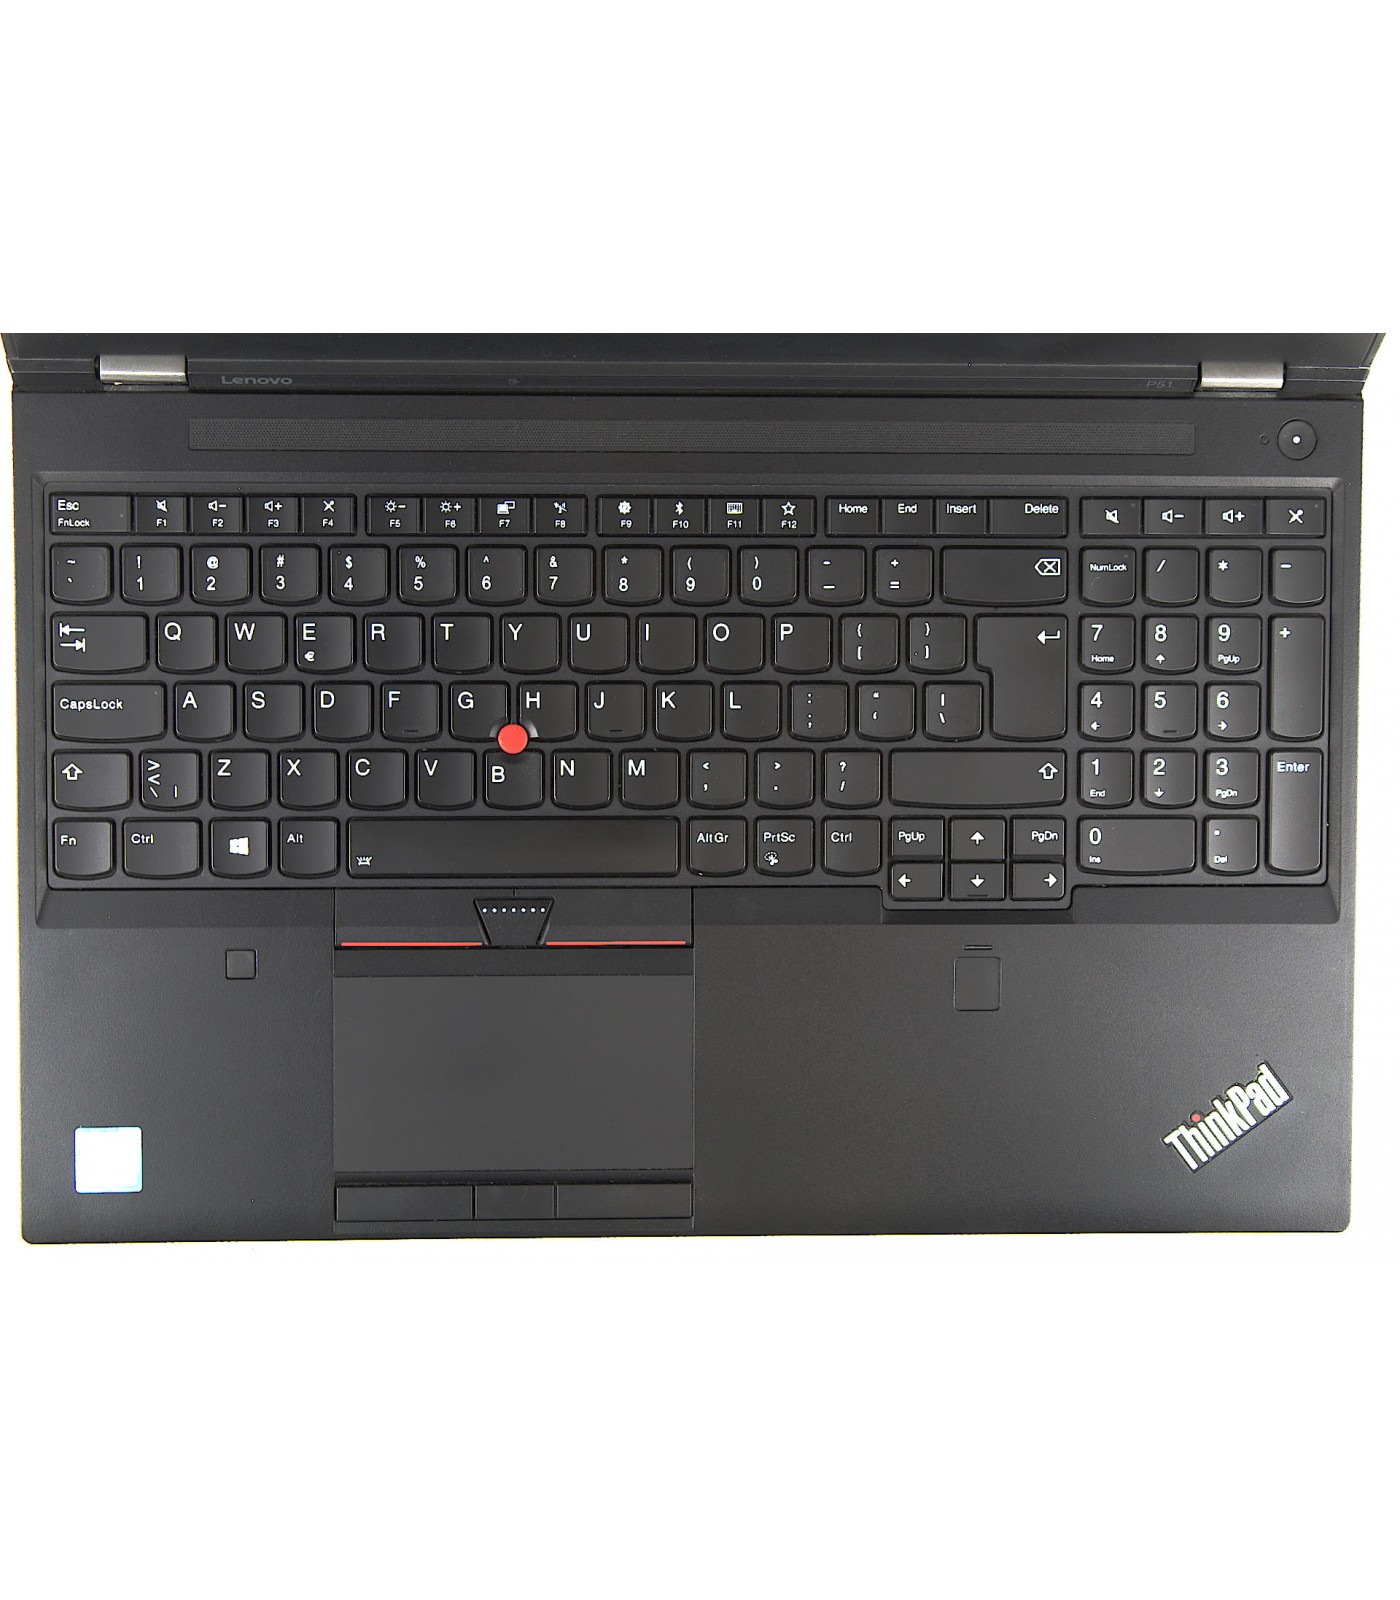 Poleasingowy laptop Lenovo Thinkpad P51 z procesorem i7